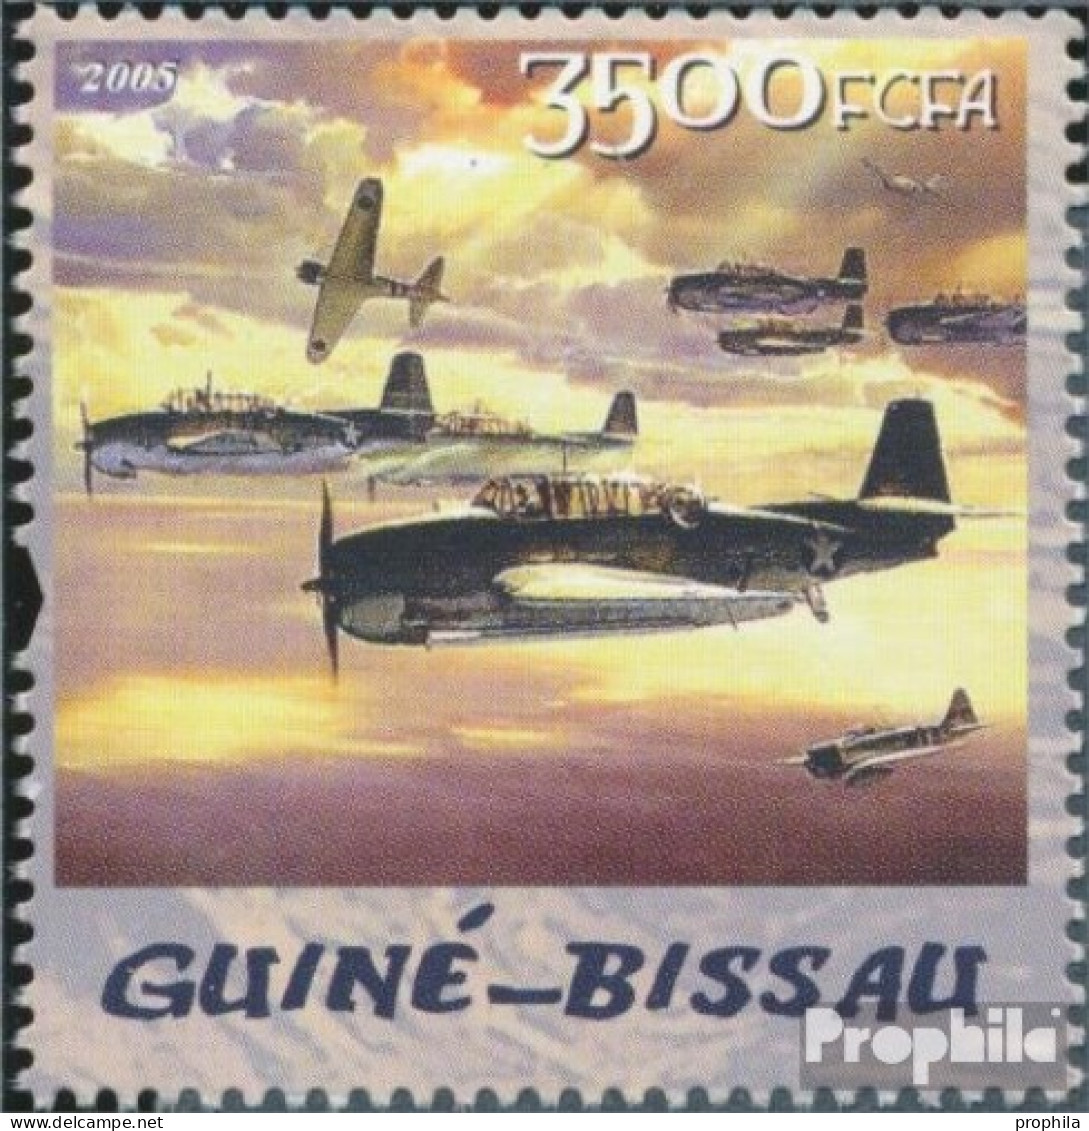 Guinea-Bissau 3099 (kompl. Ausgabe) Postfrisch 2005 Flugzeuge & Jules Verne - Guinea-Bissau